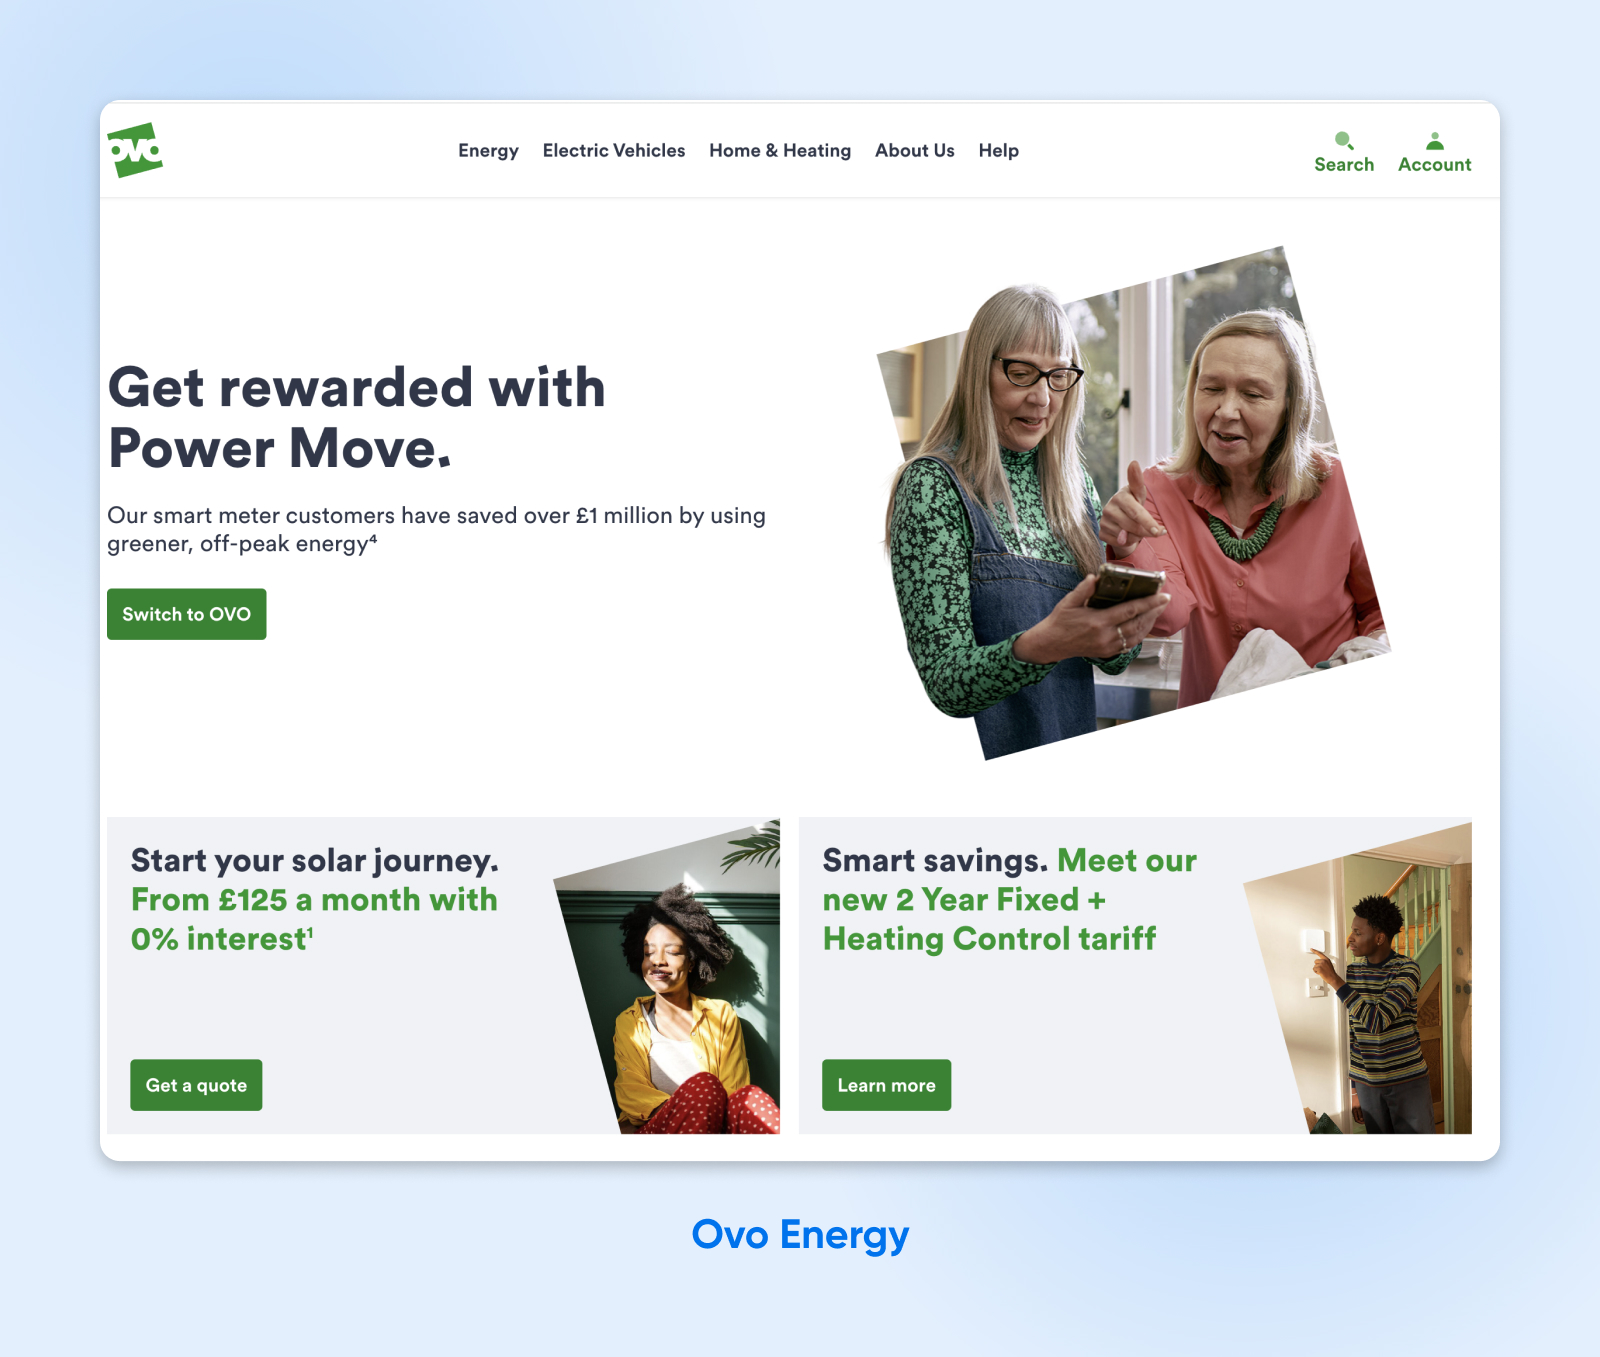 Captura de pantalla del sitio web de Ovo Energy con texto grande, mucho espacio negativo, fotografías en marcos y botones verdes claros.